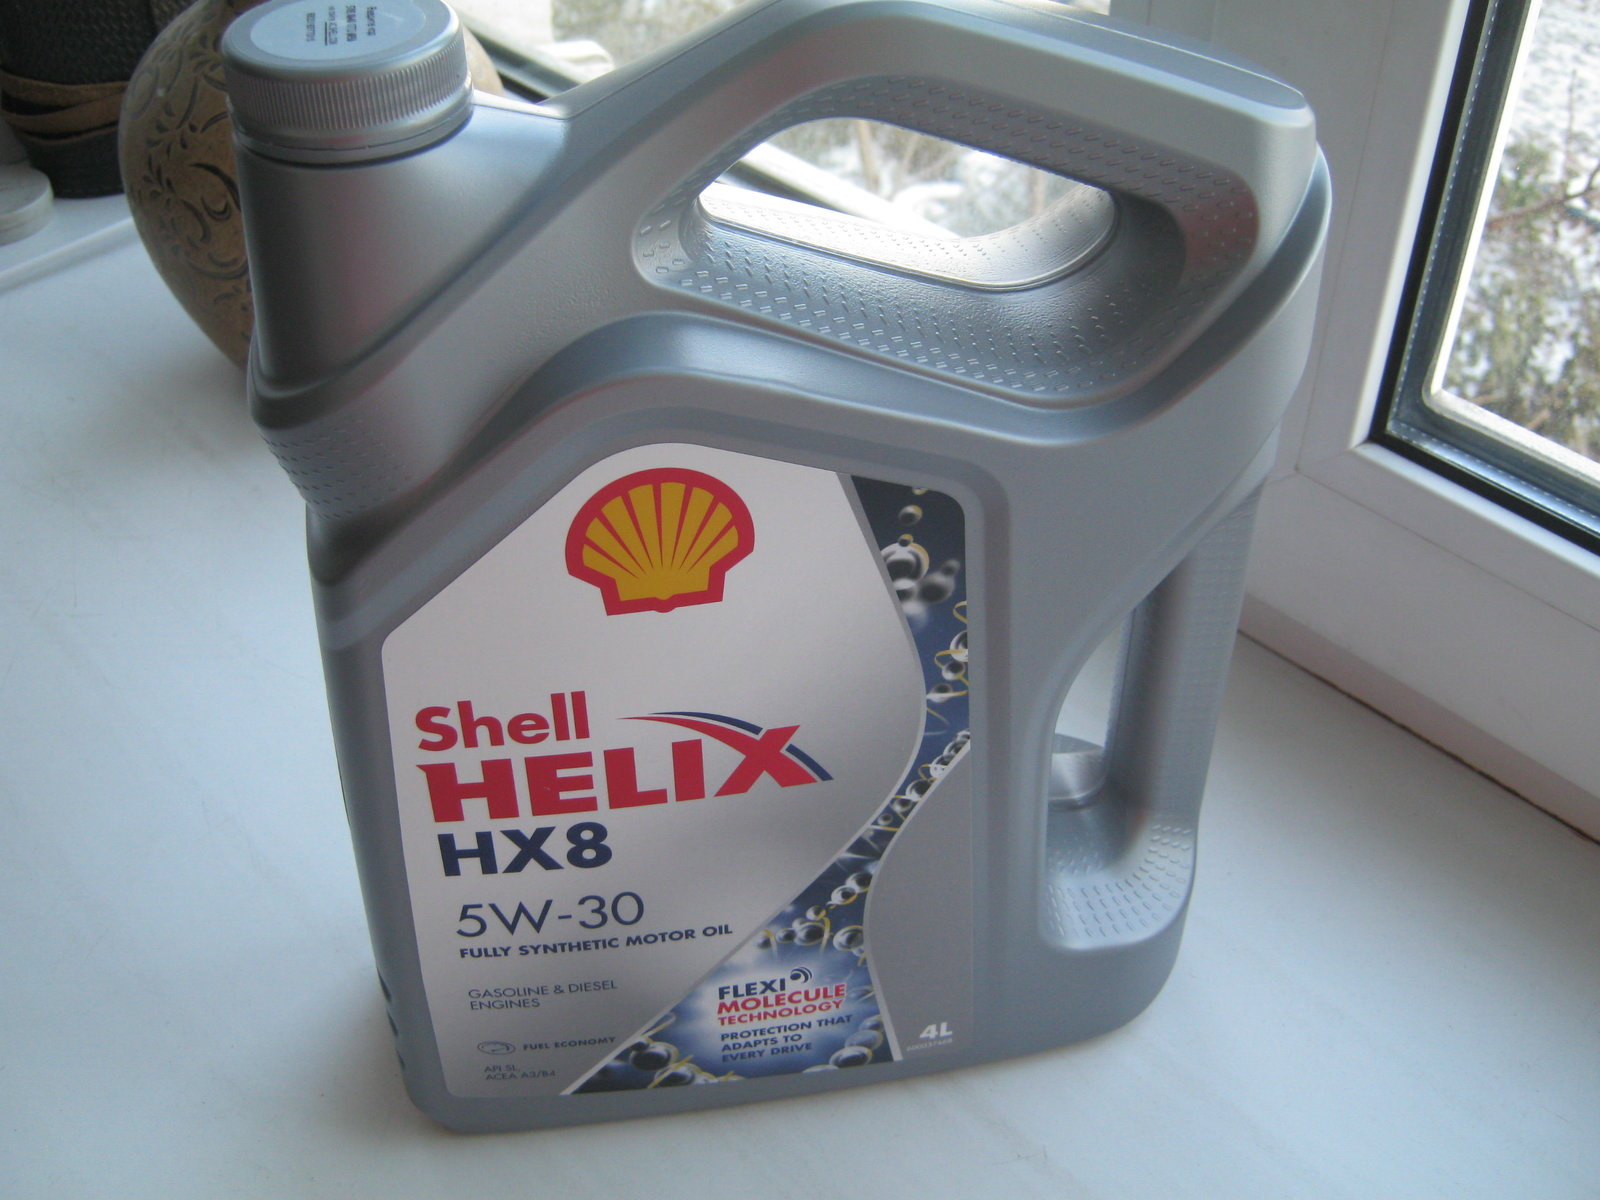 Shell hx8 5w30 купить. Shell hx8 5w30 a3/b4. Shell hx8 5w30 a5/b5. Shell Helix hx8 Synthetic 5w30. Масло Шелл Хеликс hx8 5w30 a5 b5.